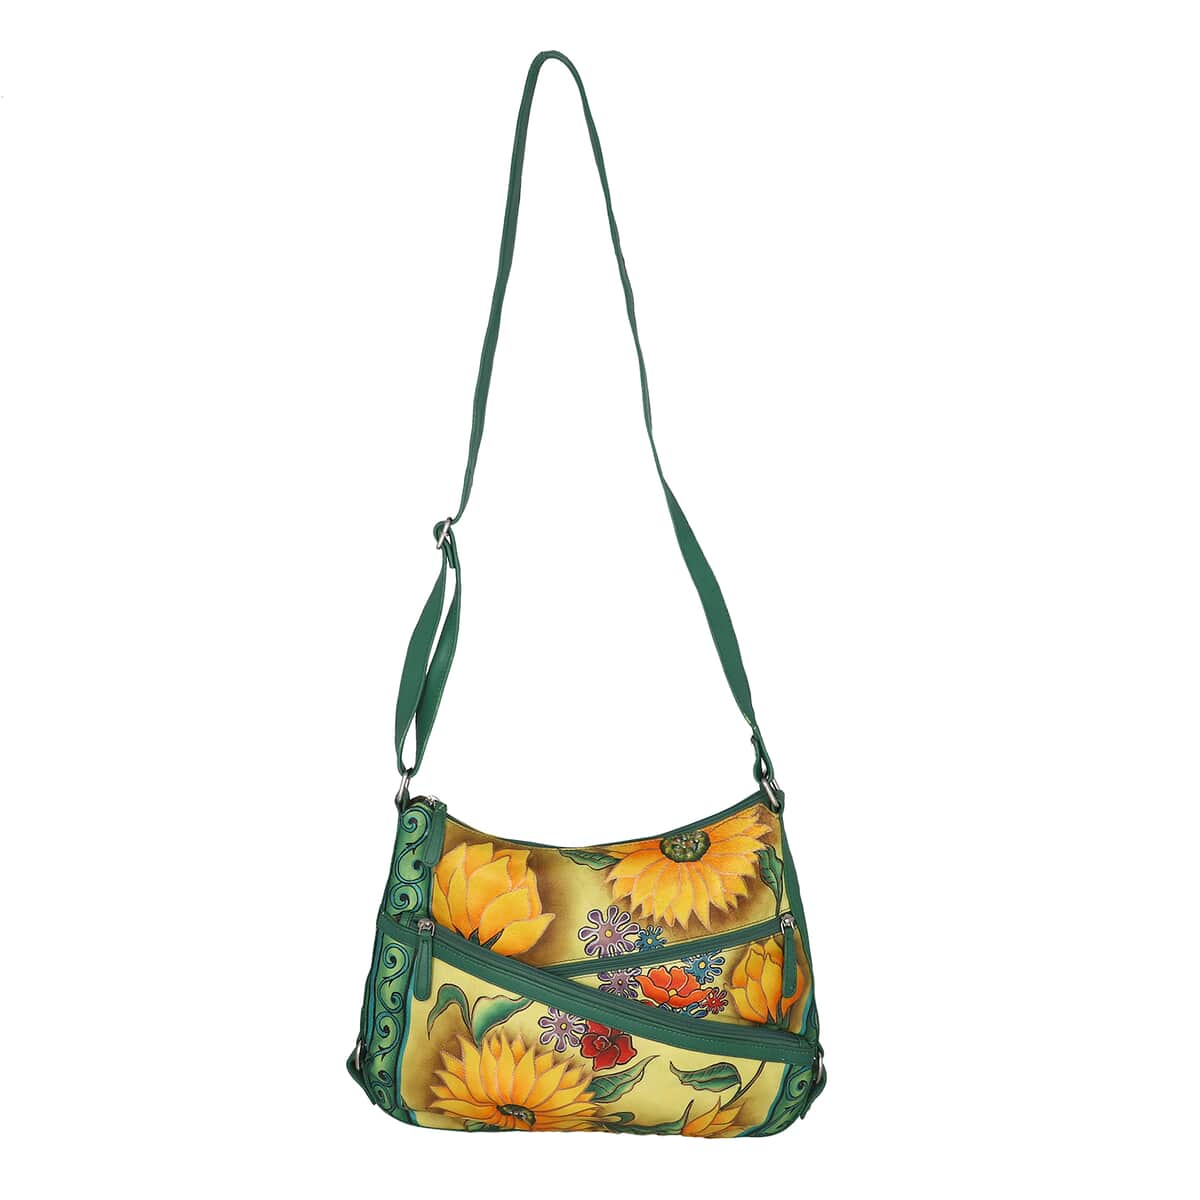 SUKRITI Light Green Floral Pattern Genuine Leather Hobo Crossbody Bag with Adjustable Shoulder Strap image number 6